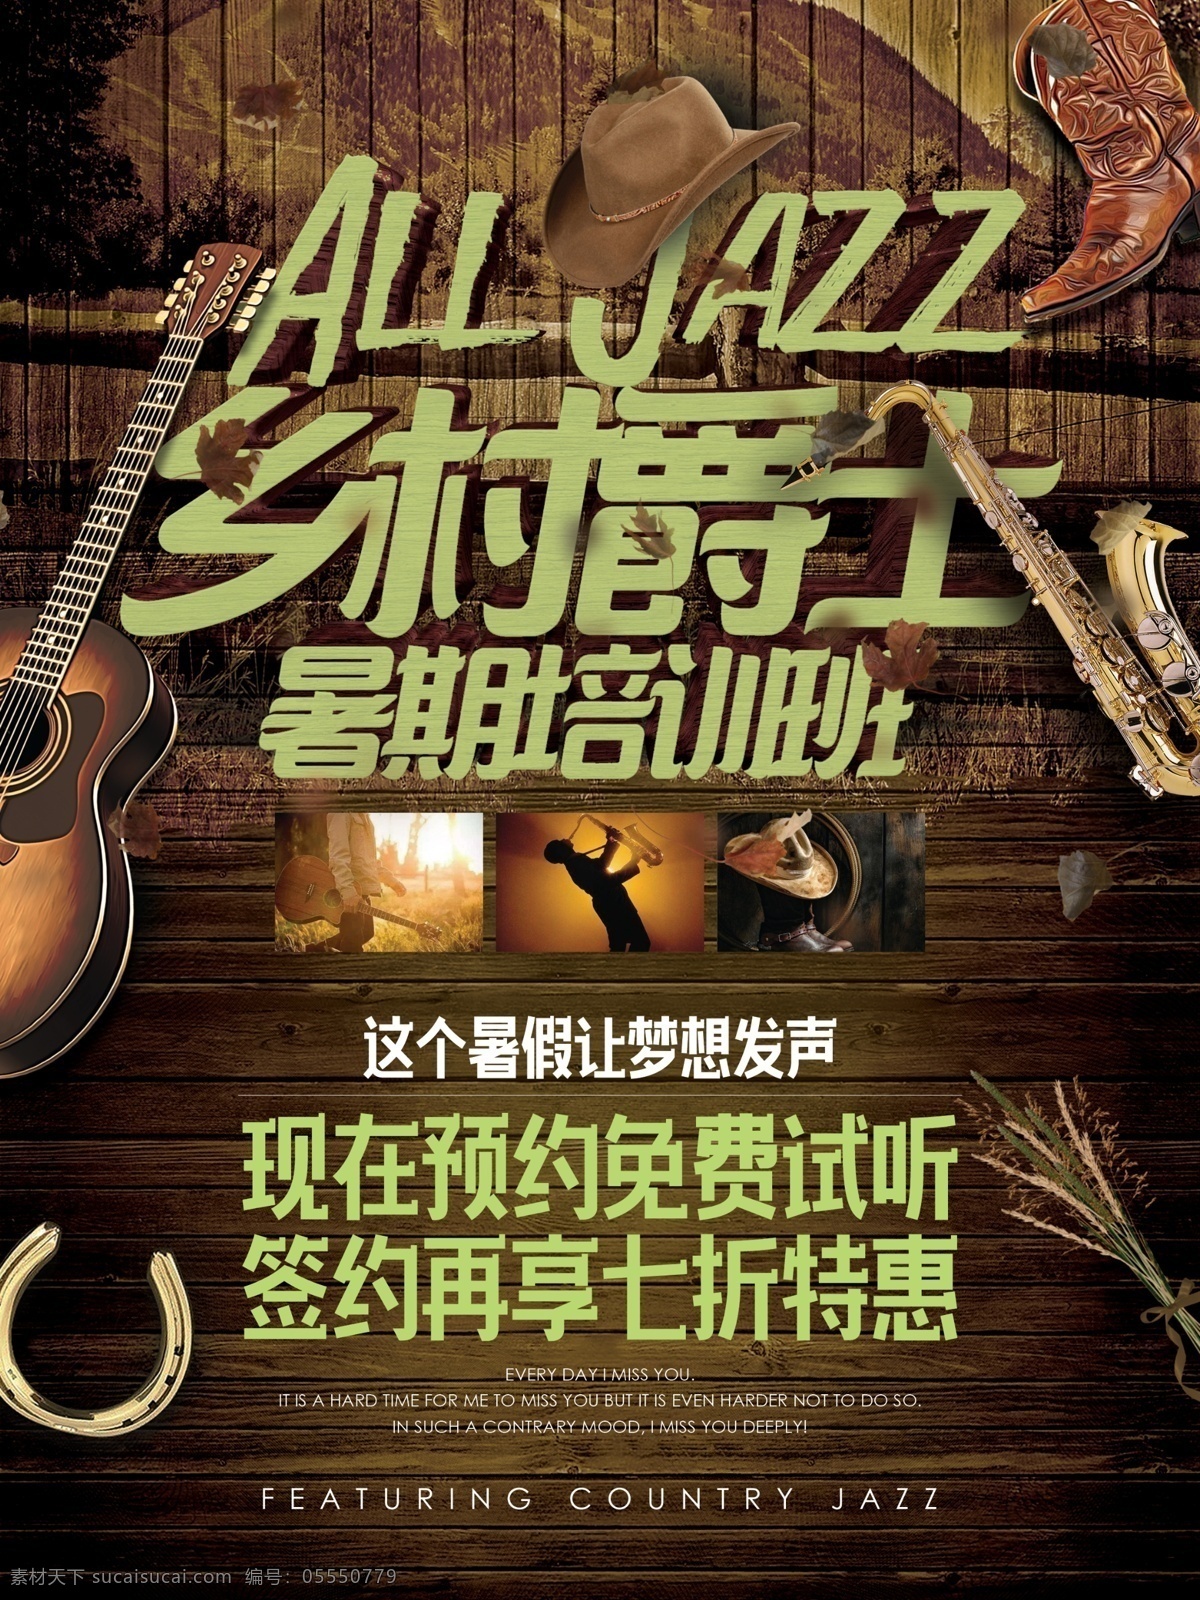 乡村 风格 爵士乐 音乐 暑期 培训班 招生 海报 欧美 暑假 宣传 促销 乡村乐 乐器 学习班